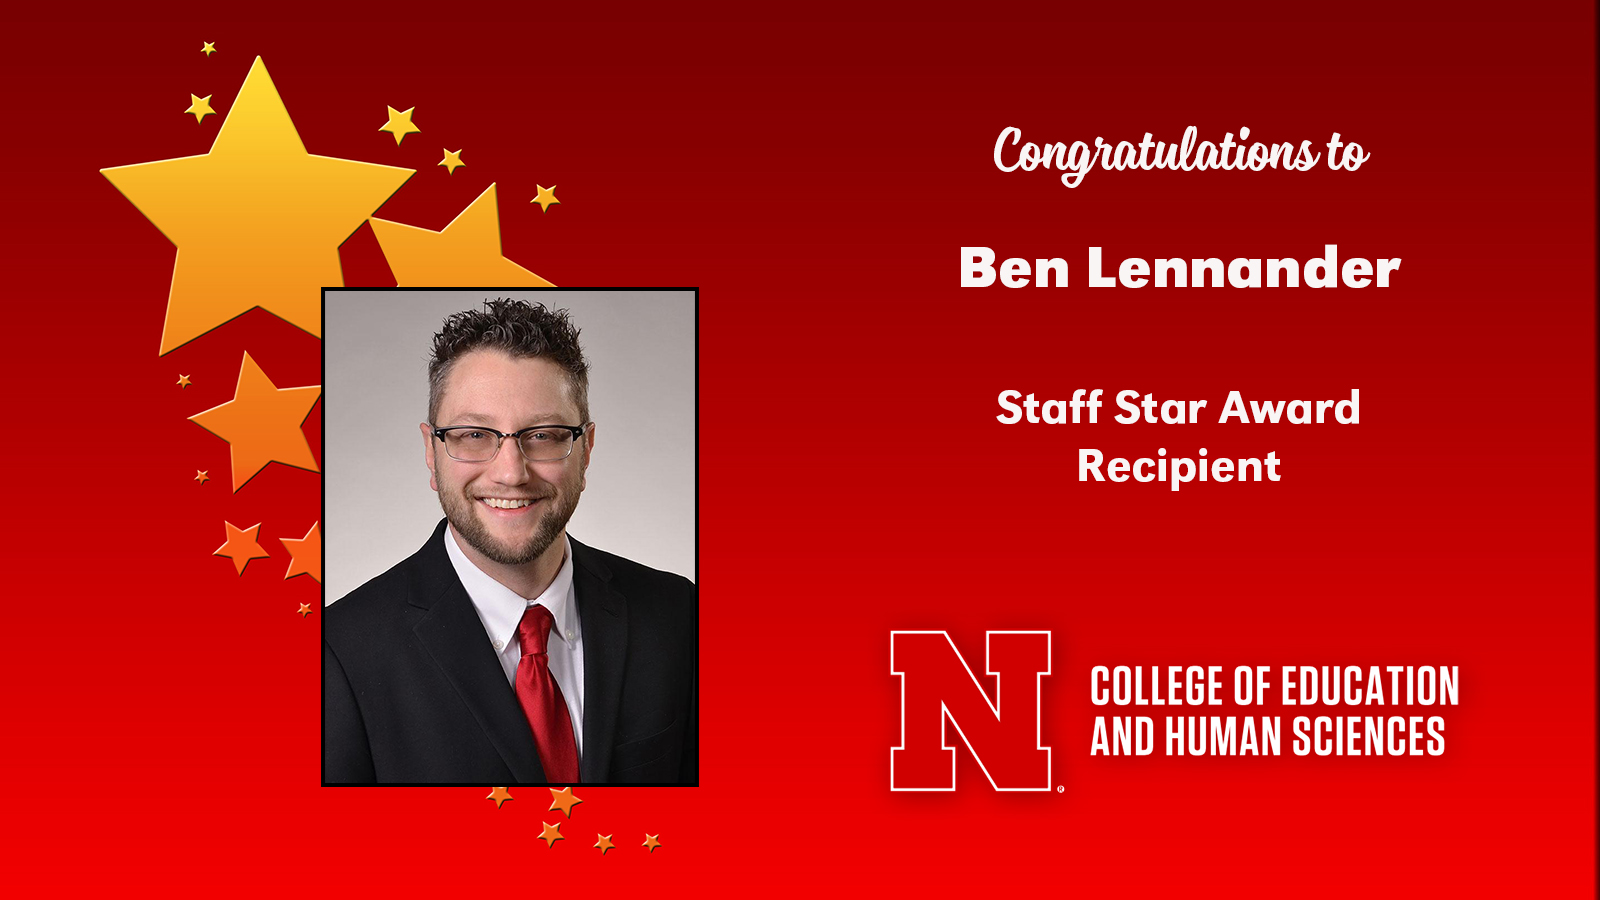 Ben Lennander is the latest CEHS Staff Star Award recipient.